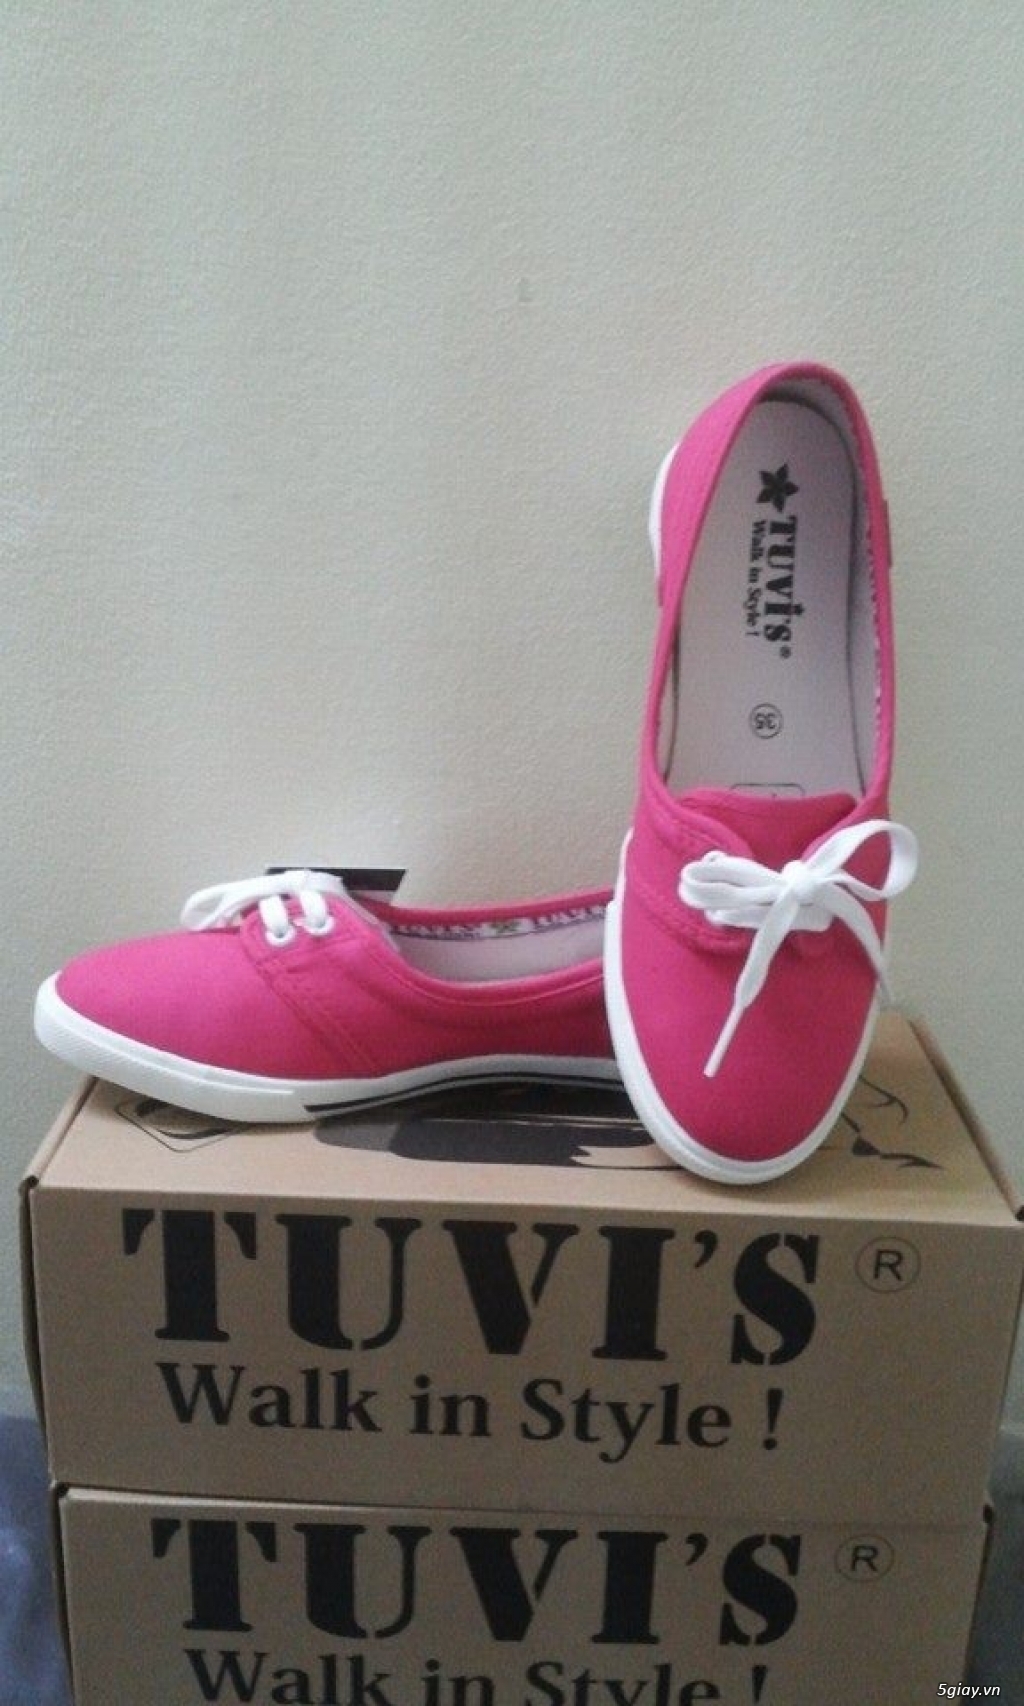 Giày TUVI'S chính hãng - Chuyên cung cấp sỉ & lẻ giày vải búp bê, slip on,dây hiệu Tuvi's... giá rẻ - 30